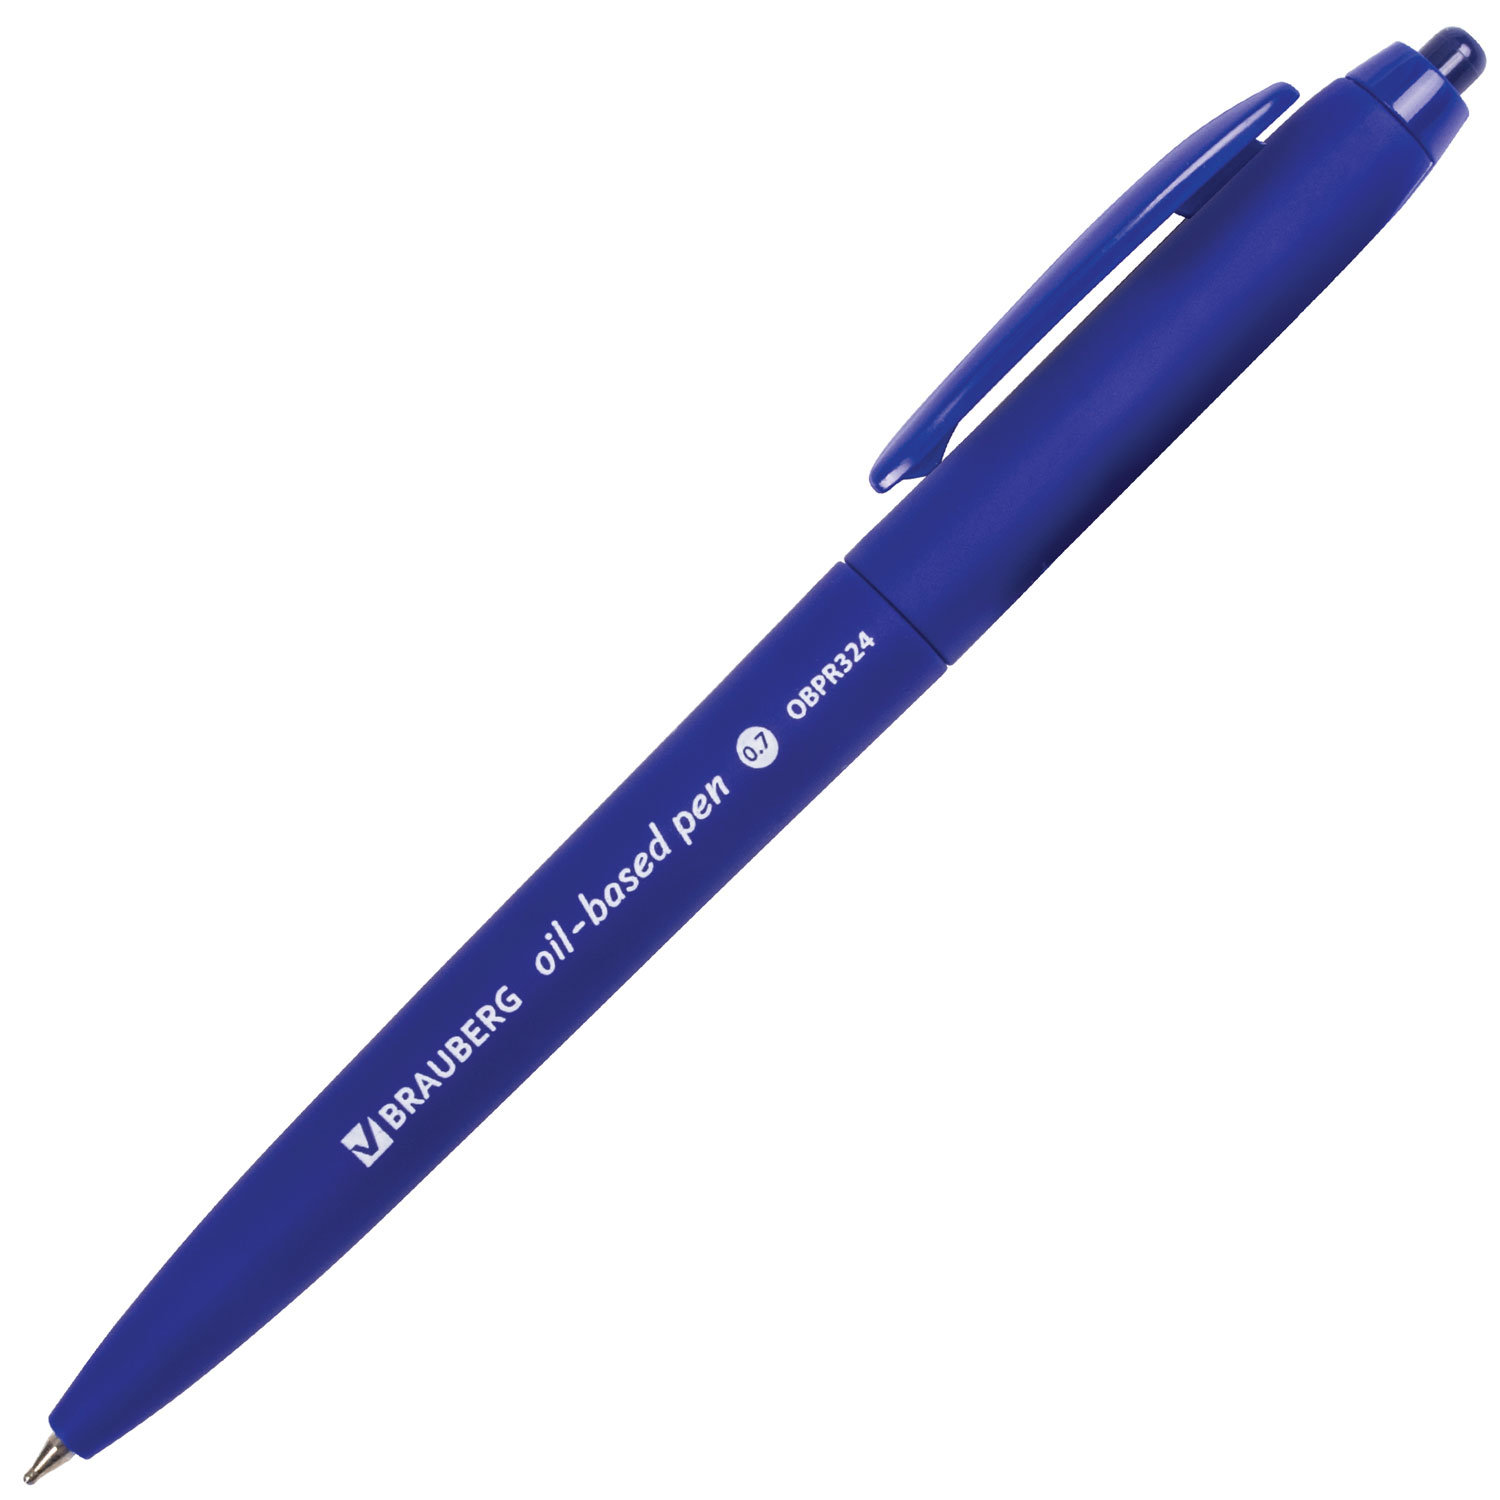 Письма 0 5 мм. Ручка шариковая синяя БРАУБЕРГ. Ручка БРАУБЕРГ автоматическая шариковая. Ручка шариковая Beifa AA 927 синяя толщина линии 0.5 мм. Ручка БРАУБЕРГ 0.5.